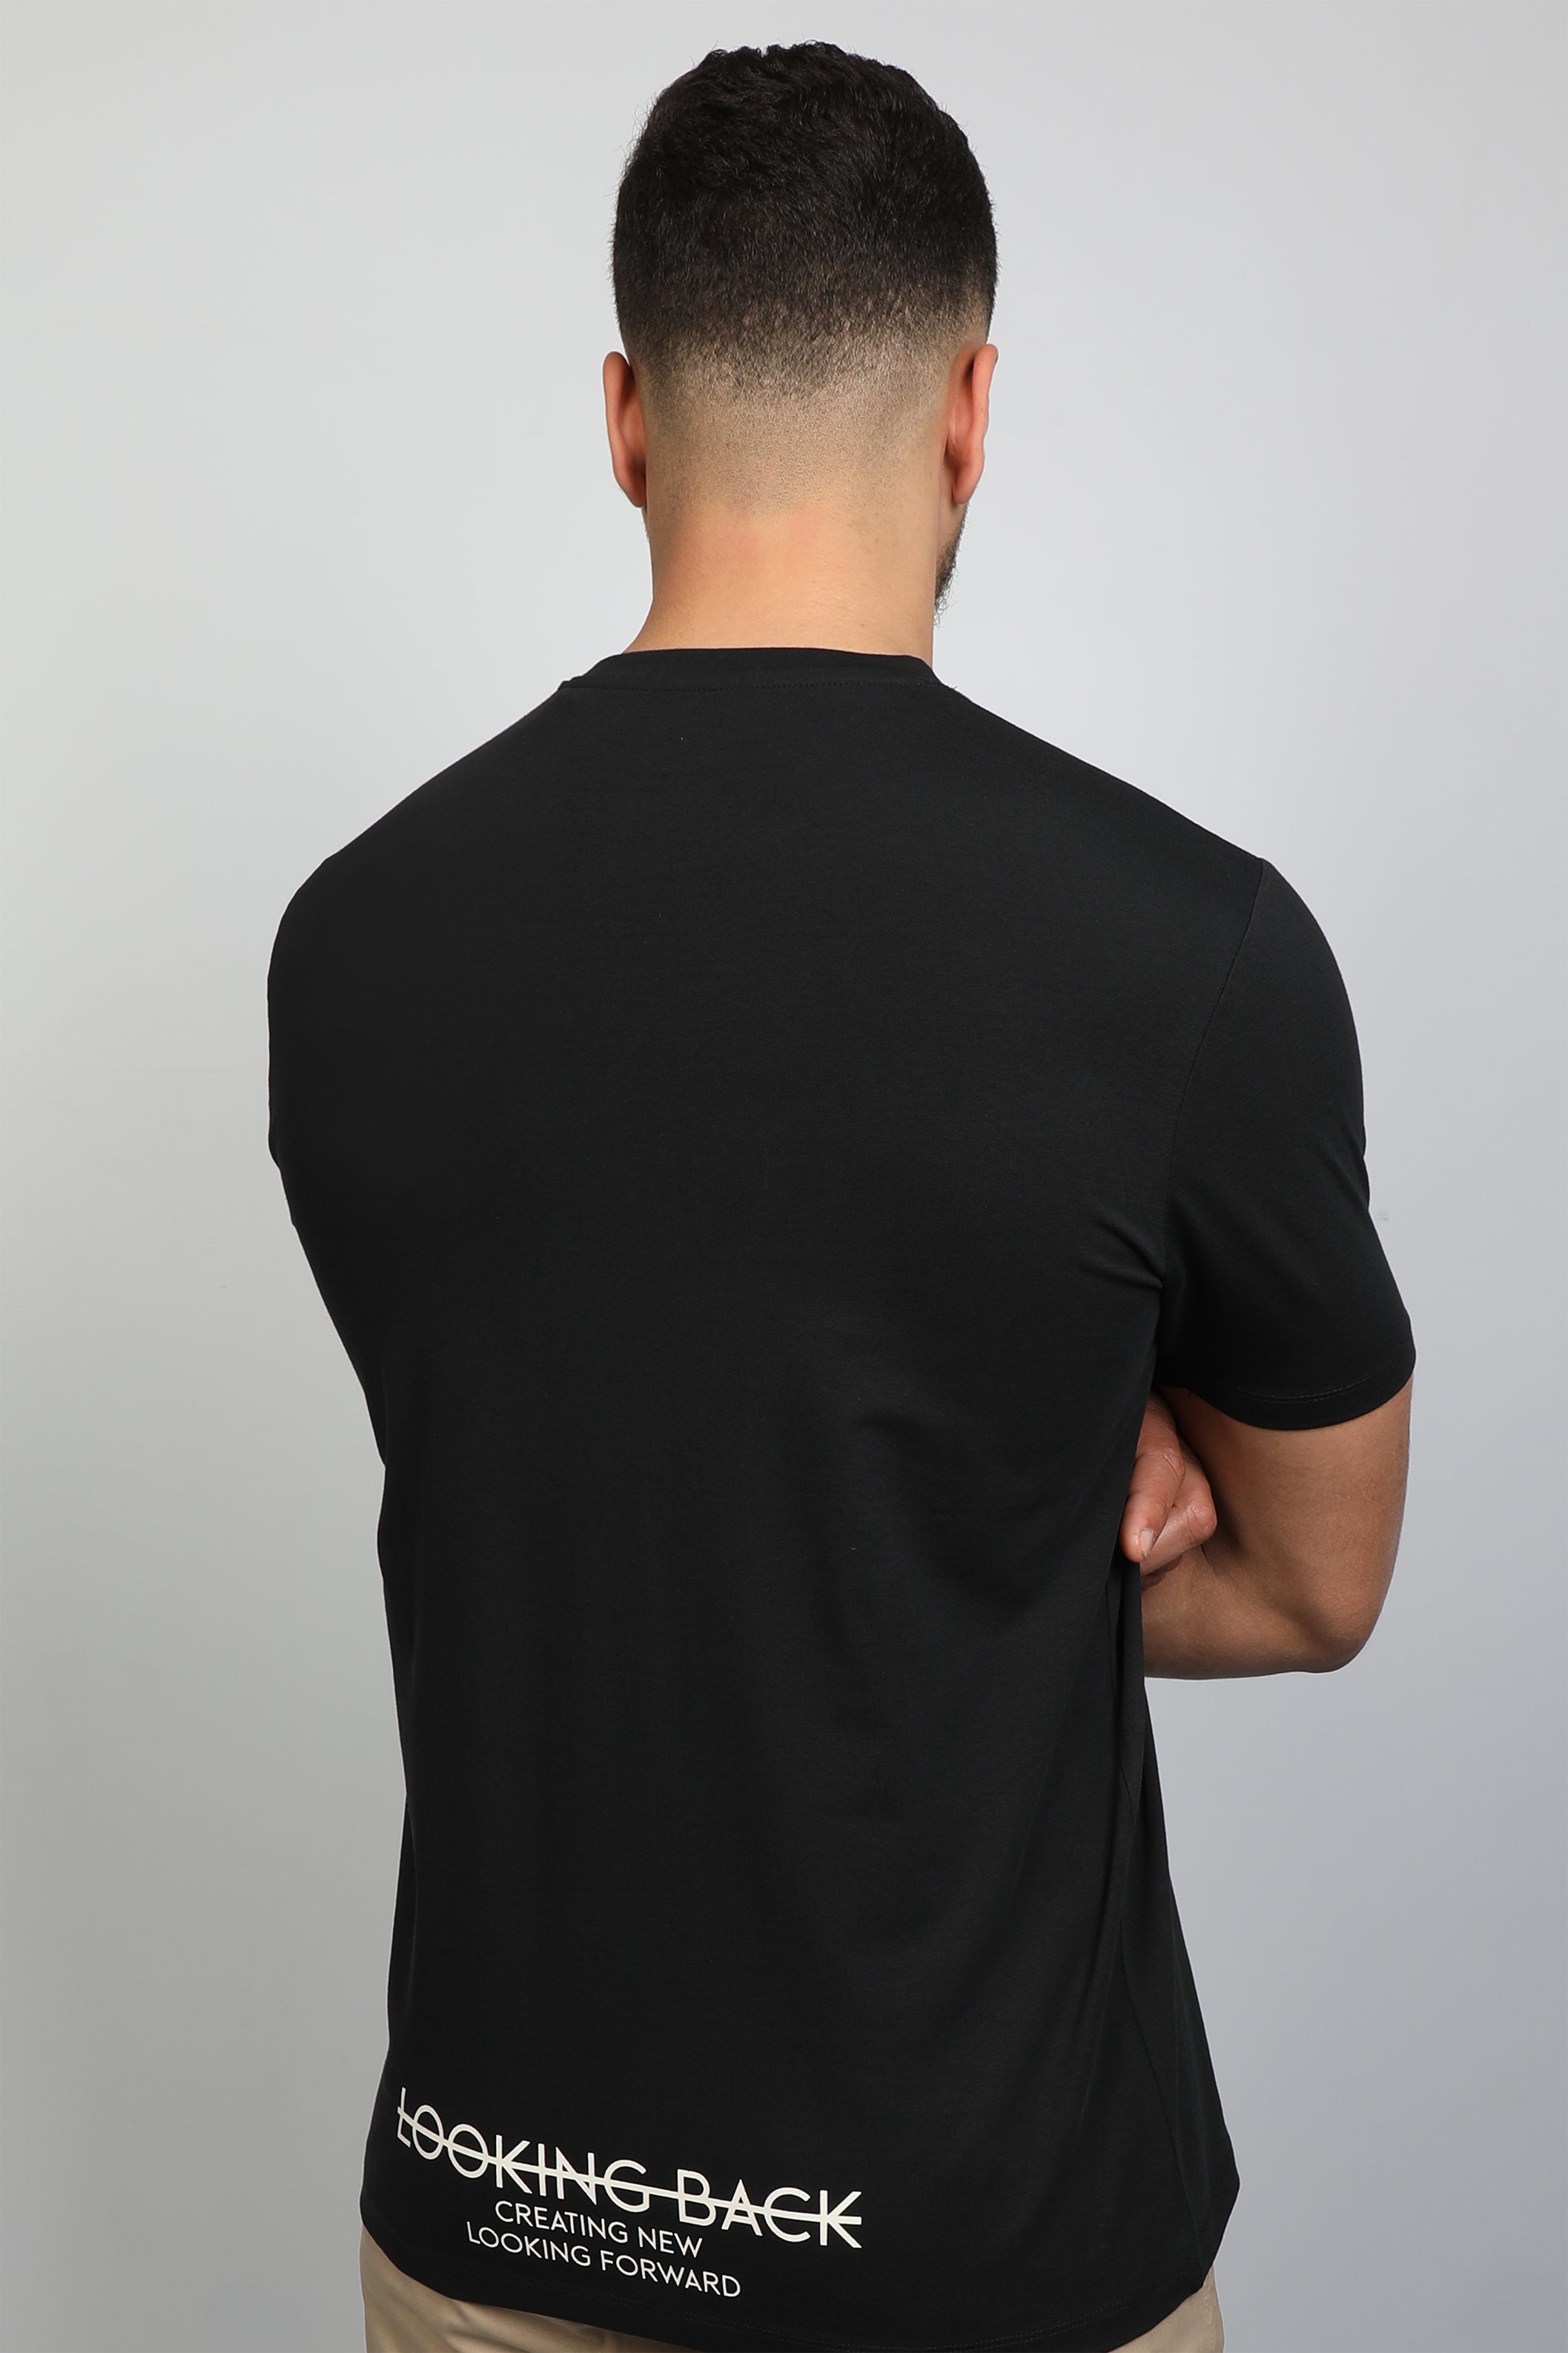 Men Black T-shirt Front and Lower Back Design